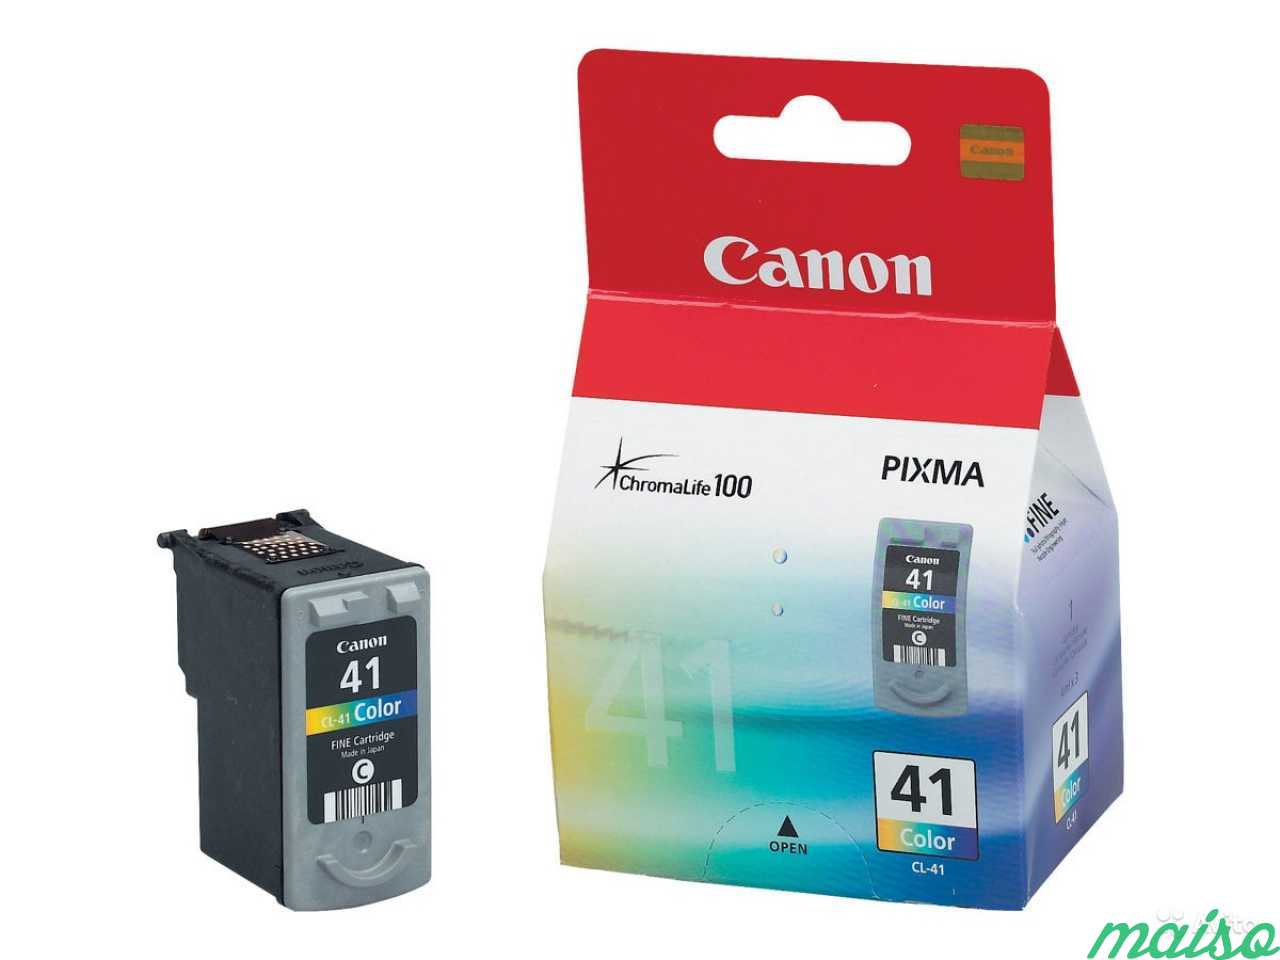 Цветные картриджи для принтера. Картридж Canon PIXMA CL 41. Canon CL-41 Color. Canon 41 cl41 Color. Картридж для принтера Canon CL-41 Color.